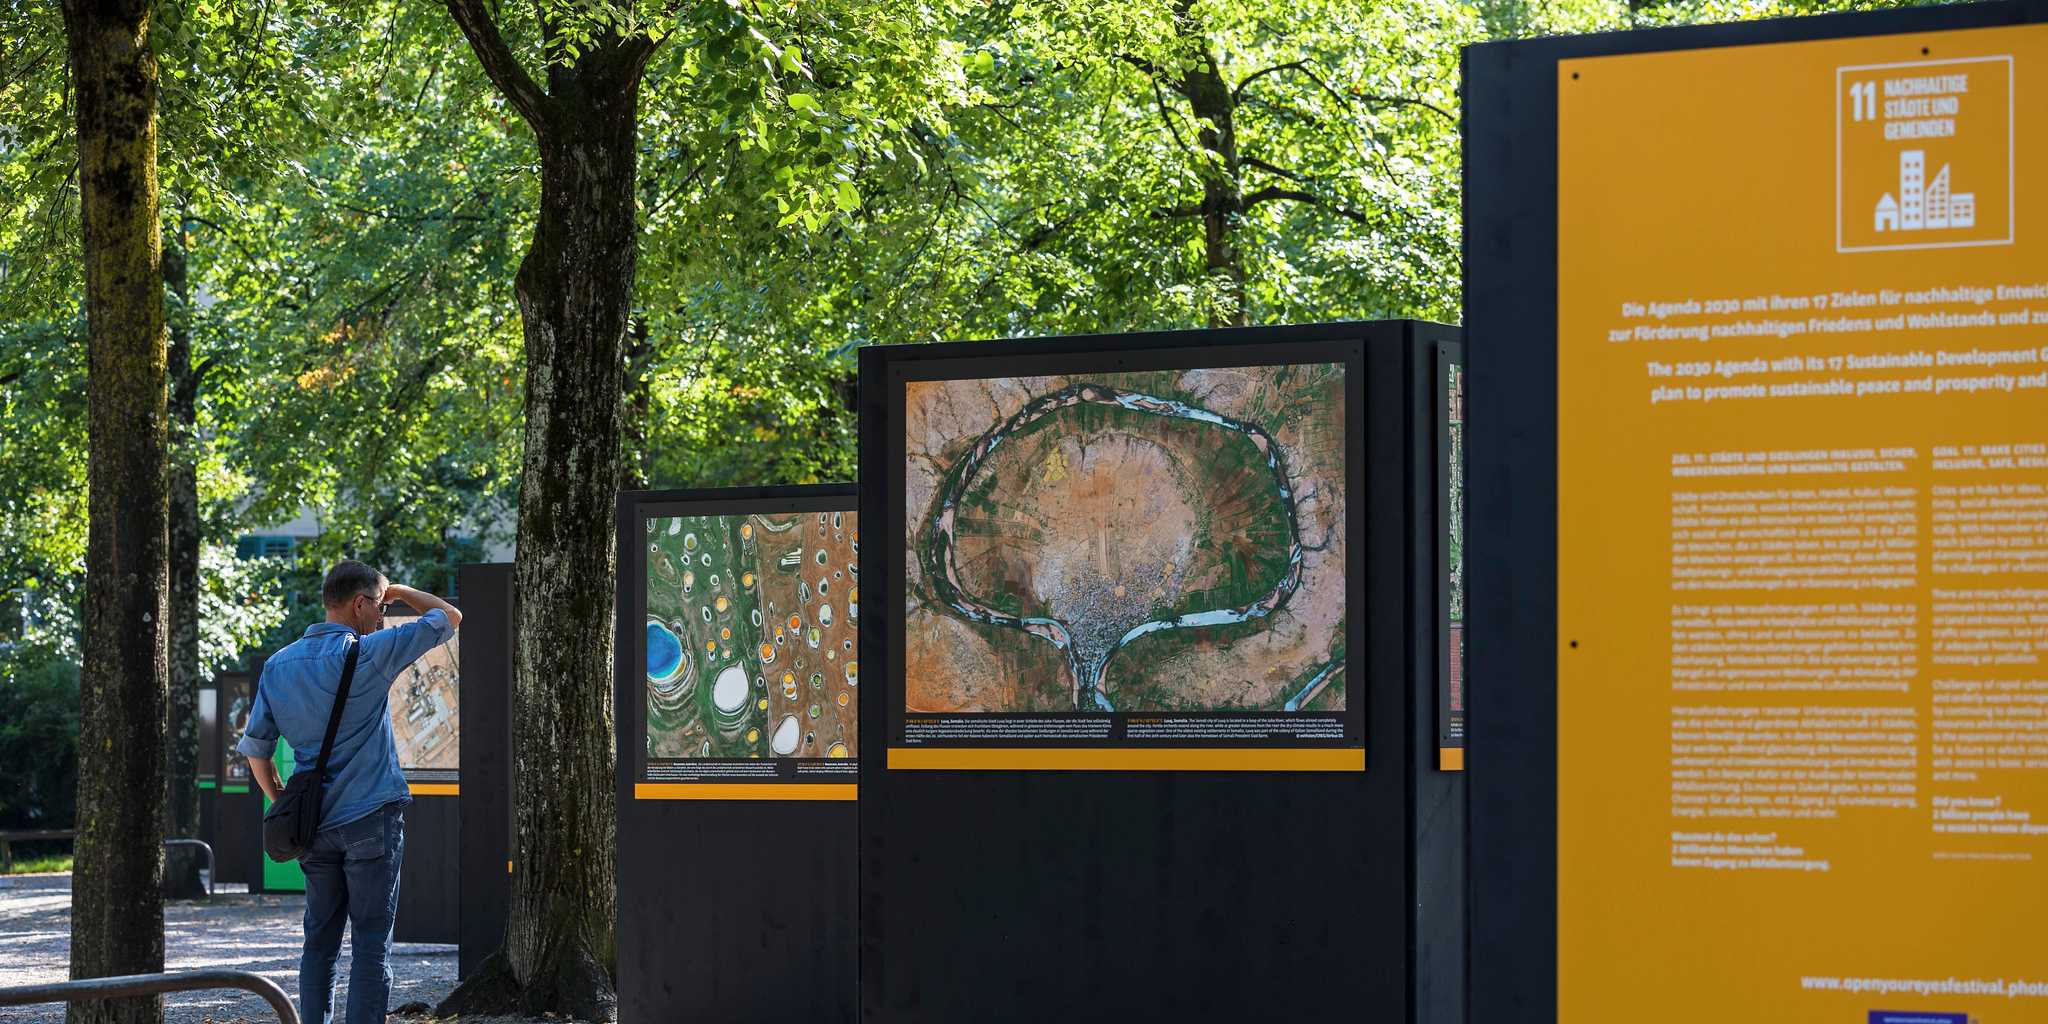 Die Ausstellungsinsel auf dem Lindenhof repräsentiert das SDG 11 "Nachhaltige Städte und Gemeinden".